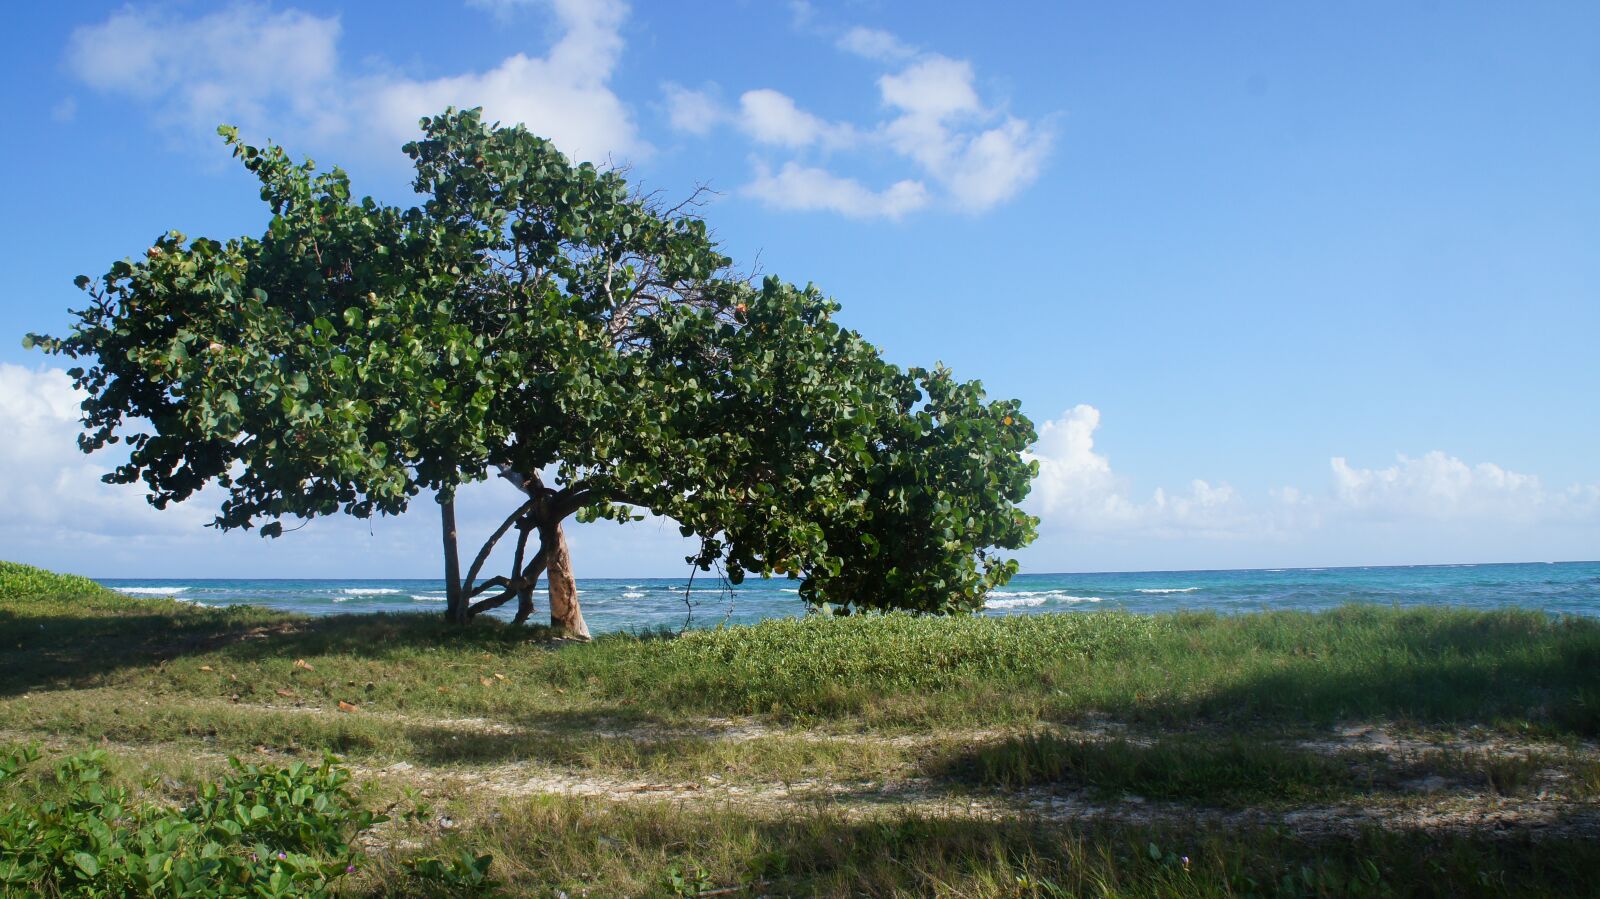 Sony Alpha NEX-C3 sample photo. Beach, jamaica, caribbean photography